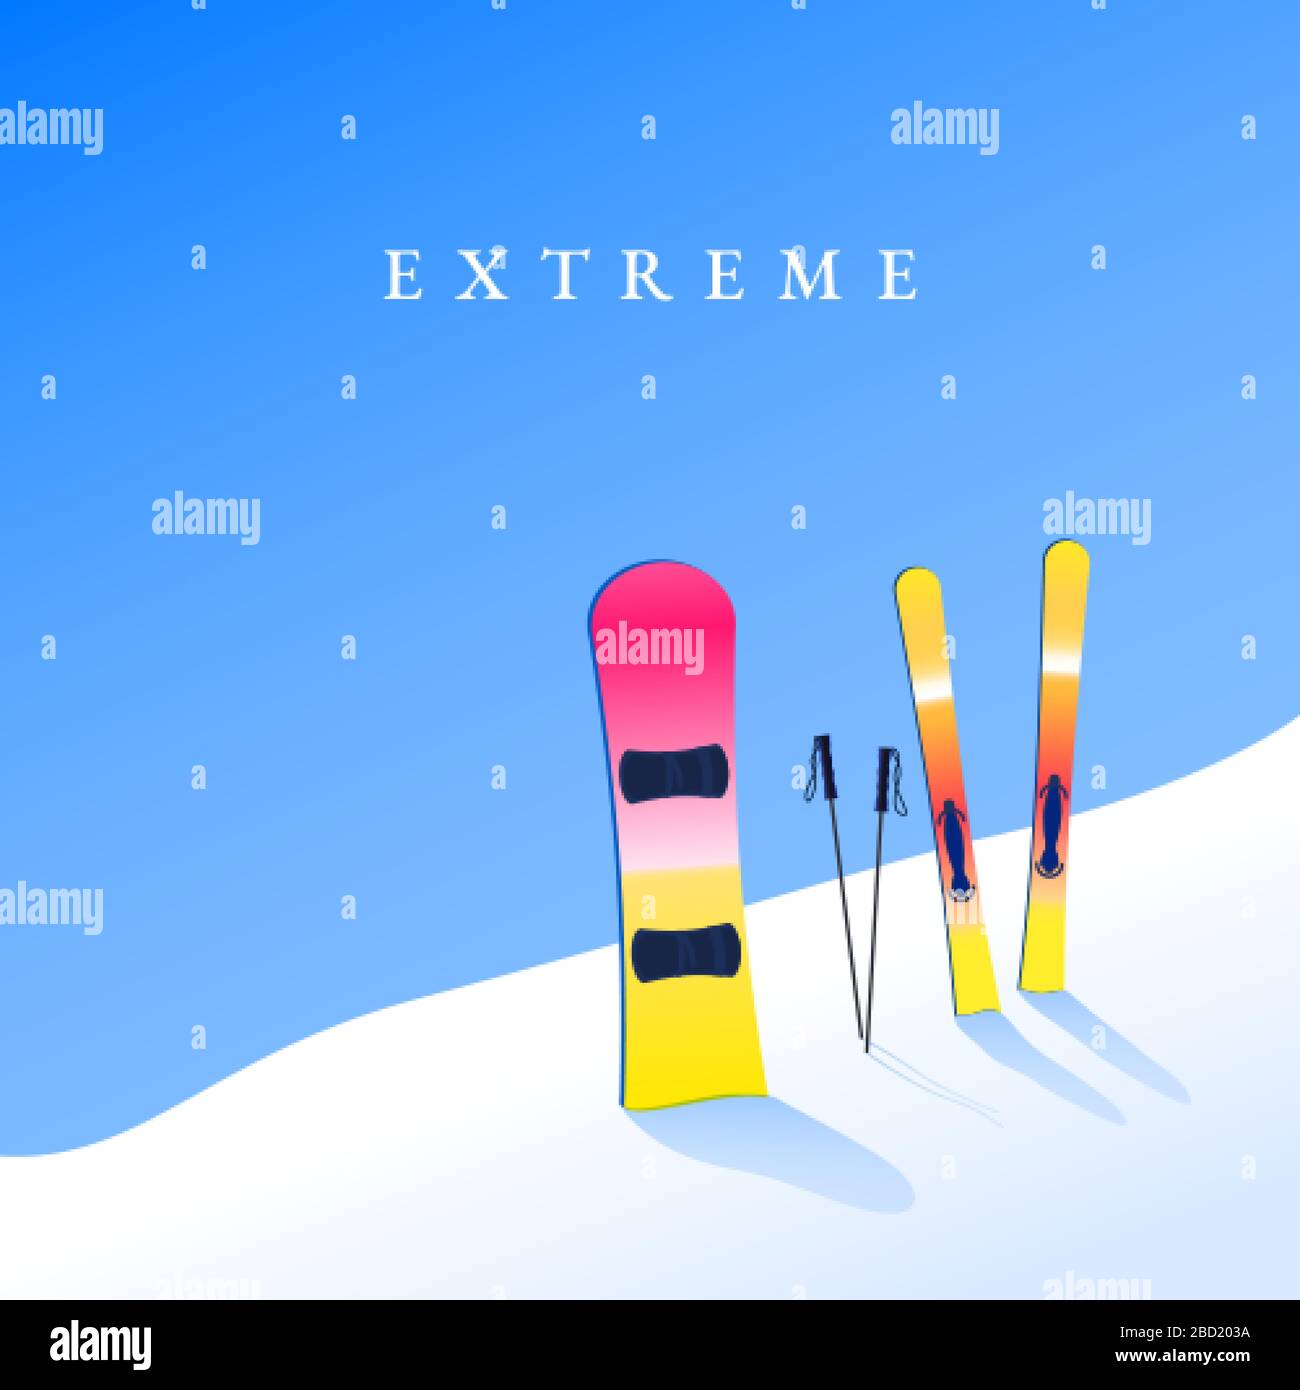 Skigebiet. Skifahren und Snowboard am Hang. Extremes Tourismus-Banner. Vektor Stock Vektor